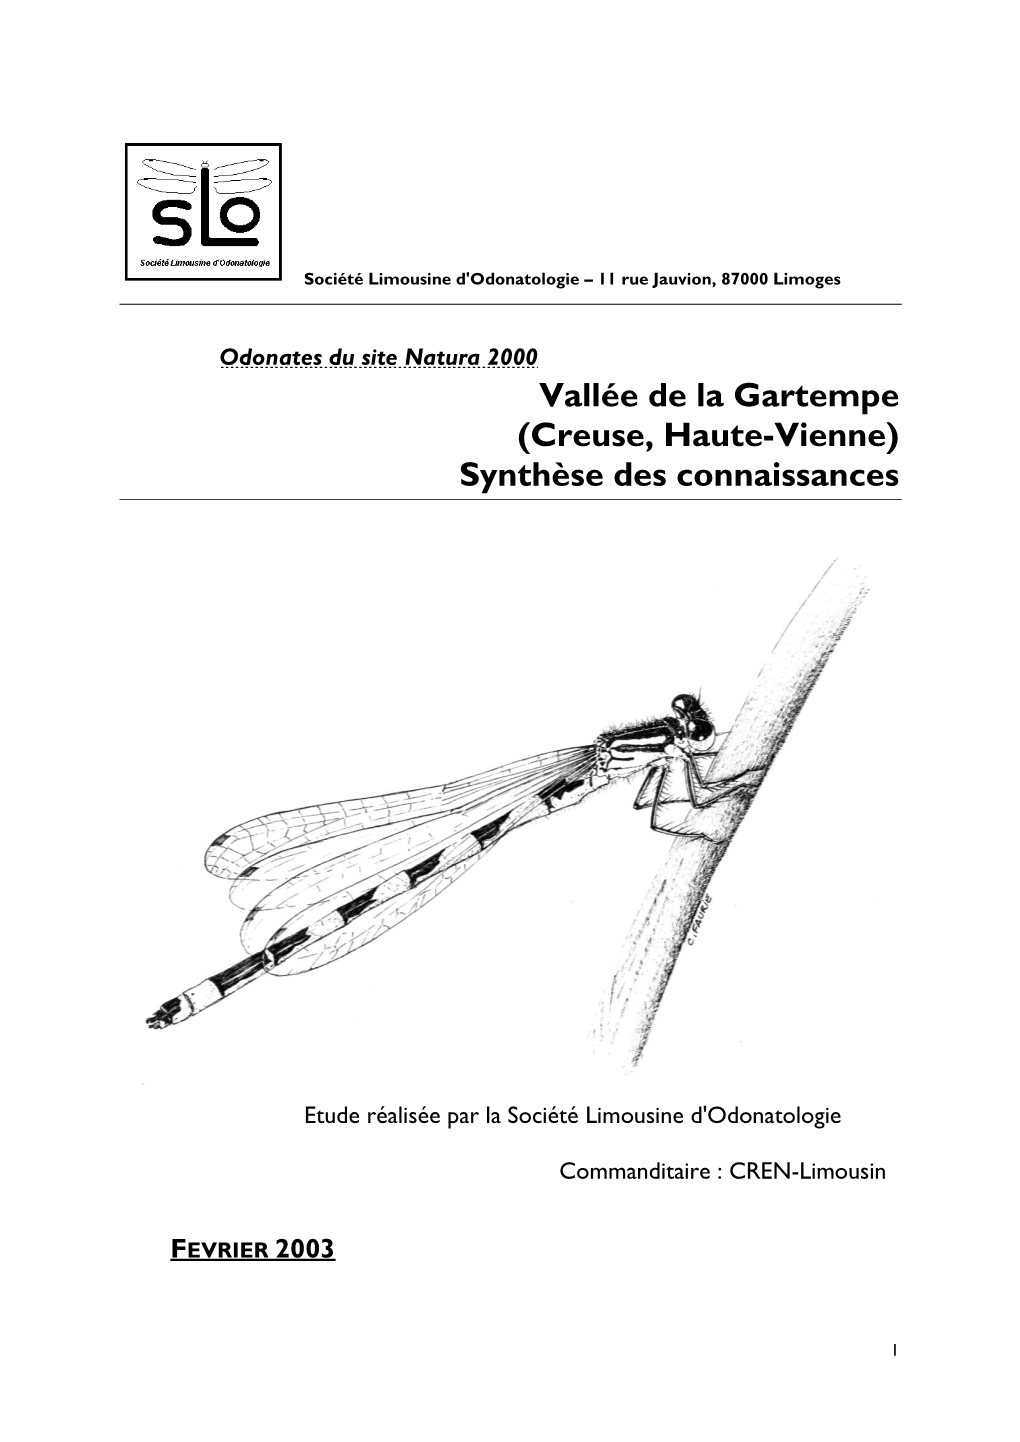 S.L.O., 2003.- Odonates Du Site Natura 2000 Vallée De La Gartempe